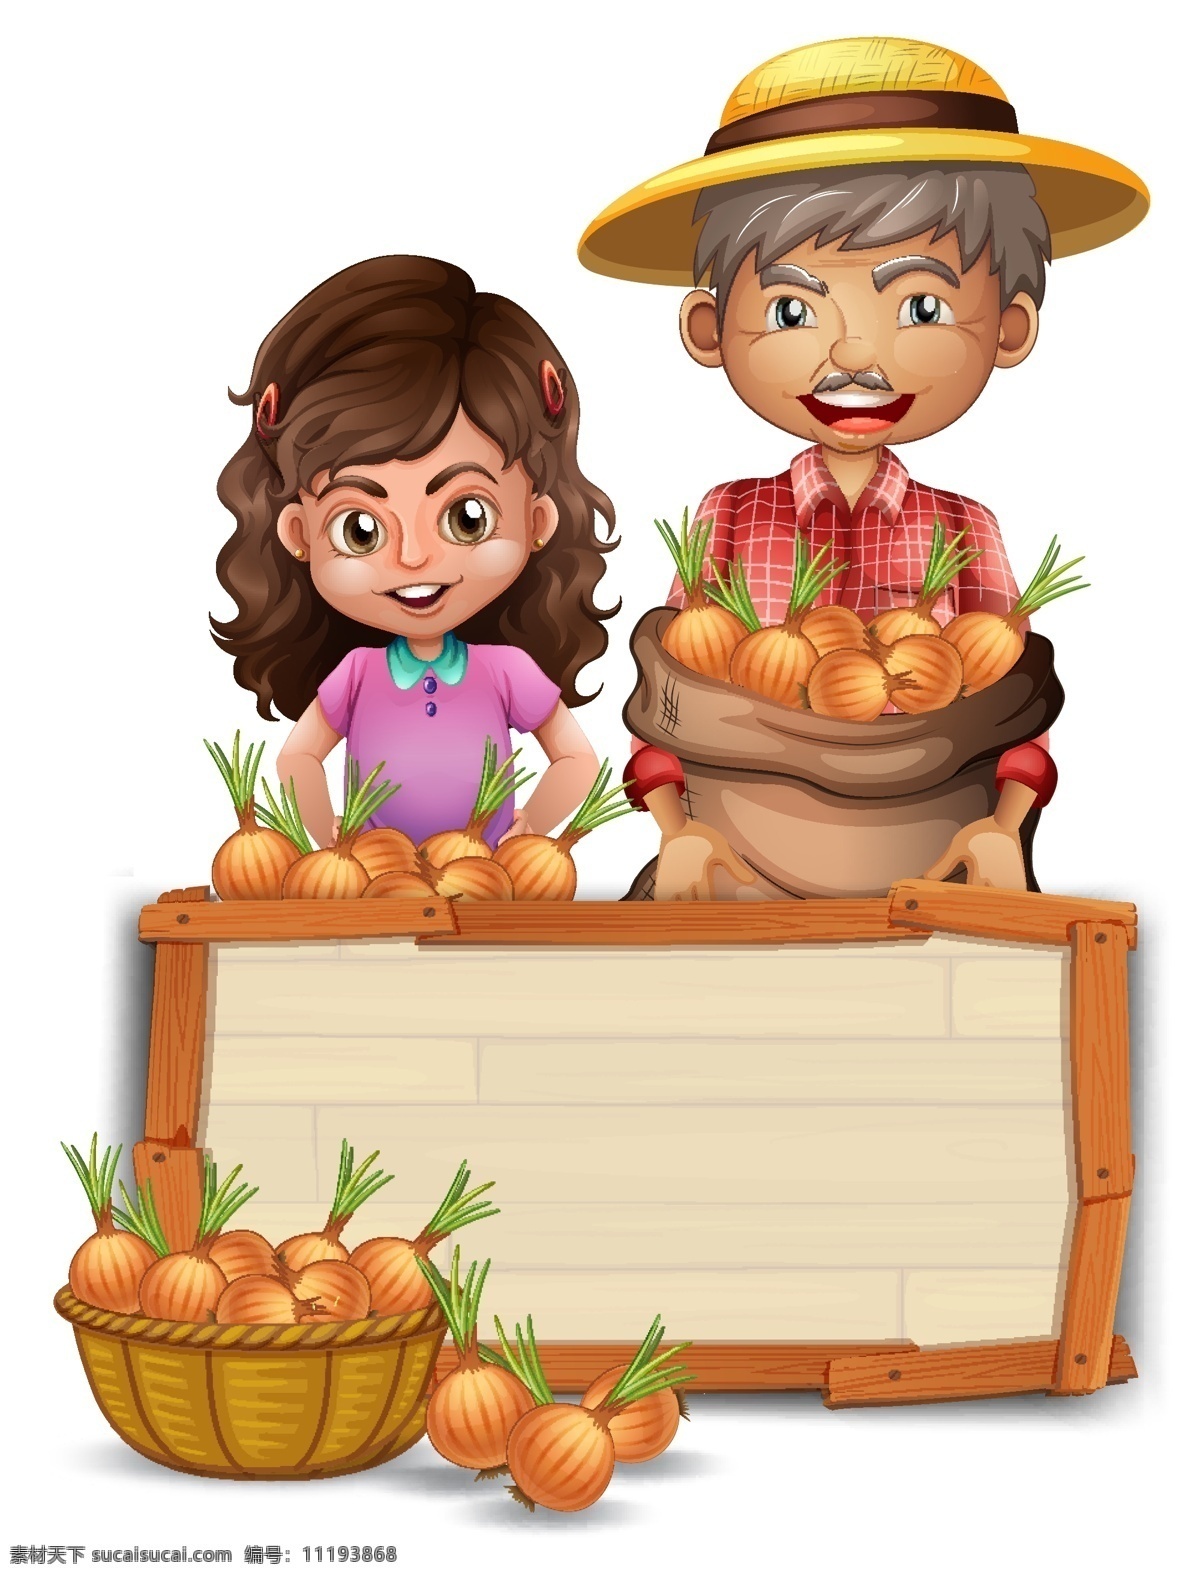 果蔬和儿童 儿童 农民 农业 手绘果蔬 菜单 水果 蔬菜 餐饮 美食 手绘 清新 卡通 有机 健康 营养 绿色 卡通设计